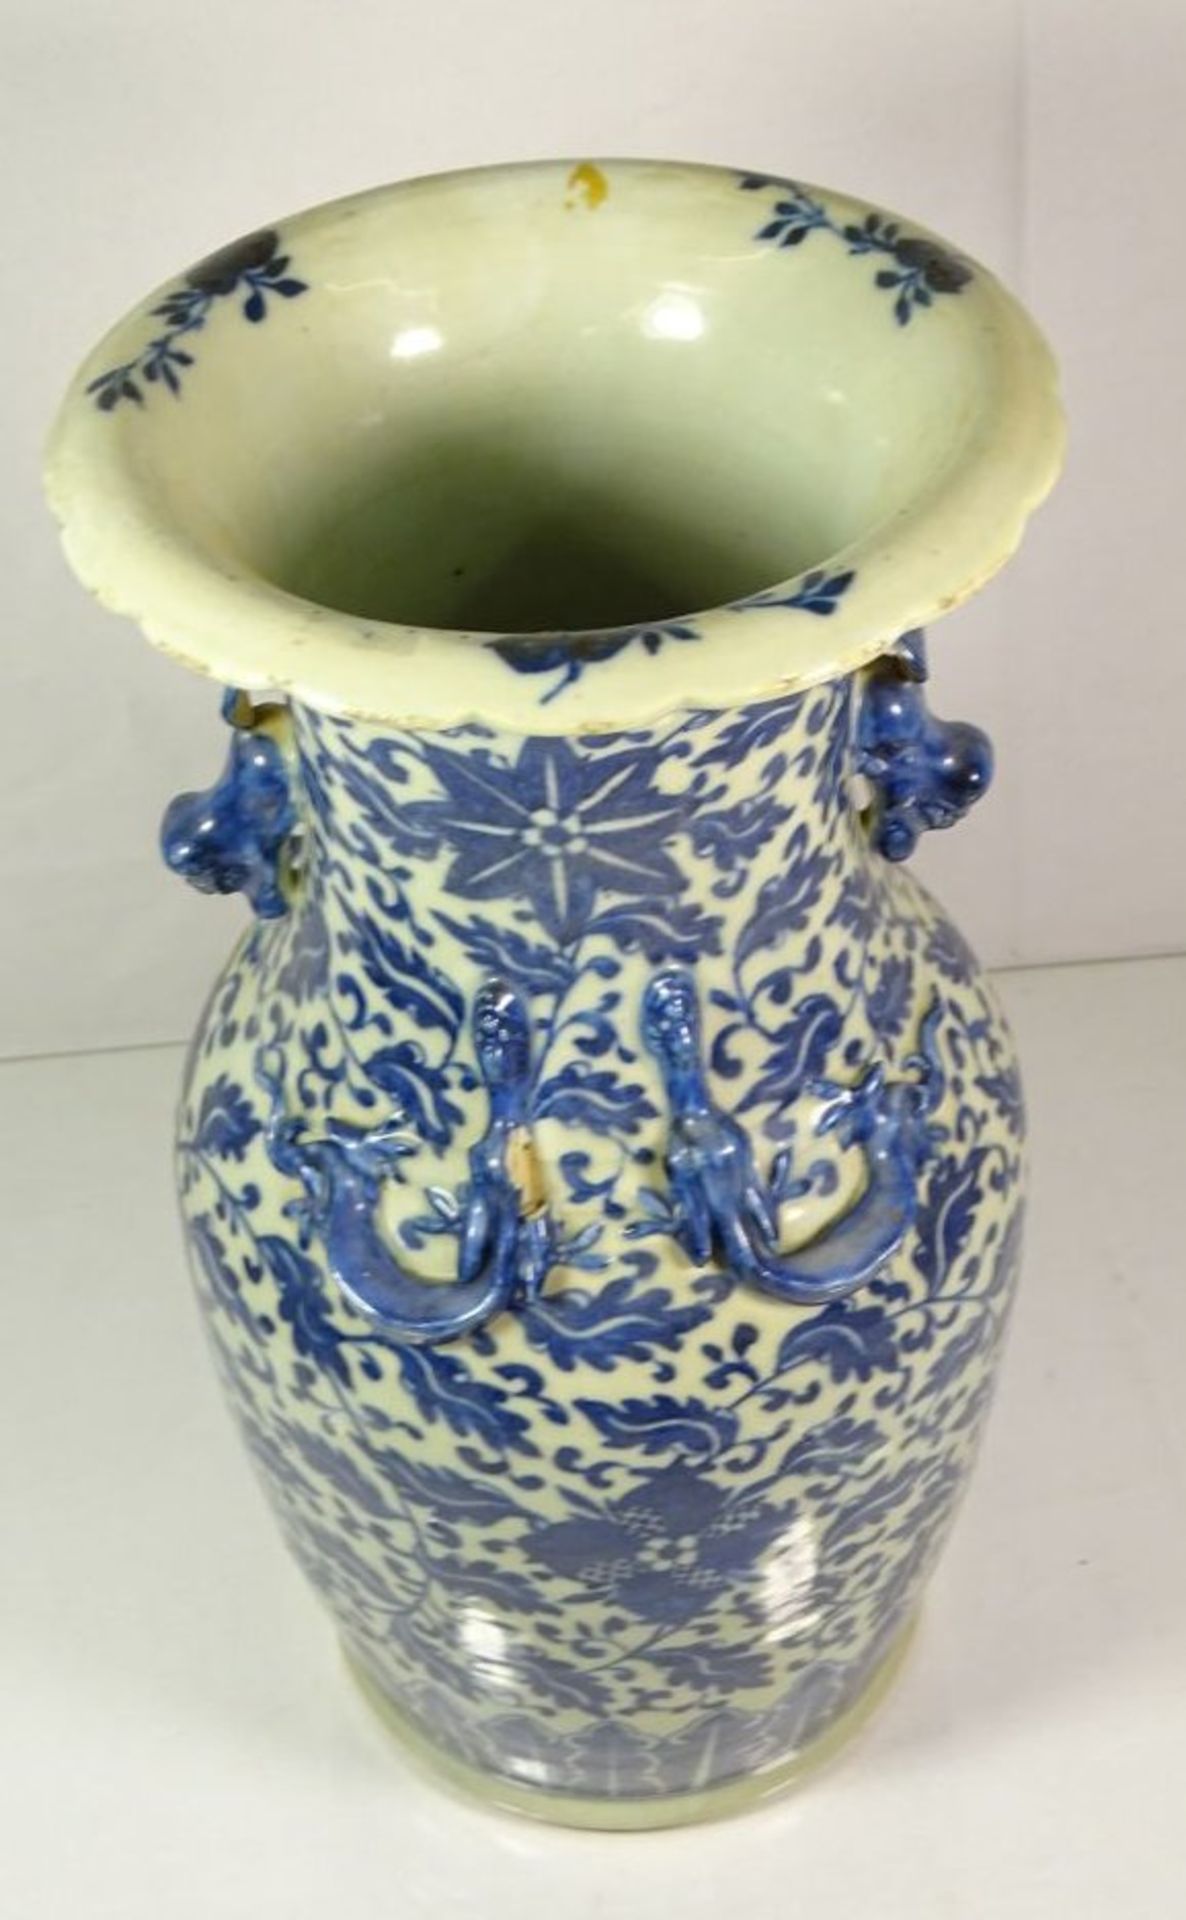 hohe Vase, wohl China, Löwen als Handhaben, sowie plast. Echsen, blaues Dekor, 1x Echse bestossen - Image 7 of 8